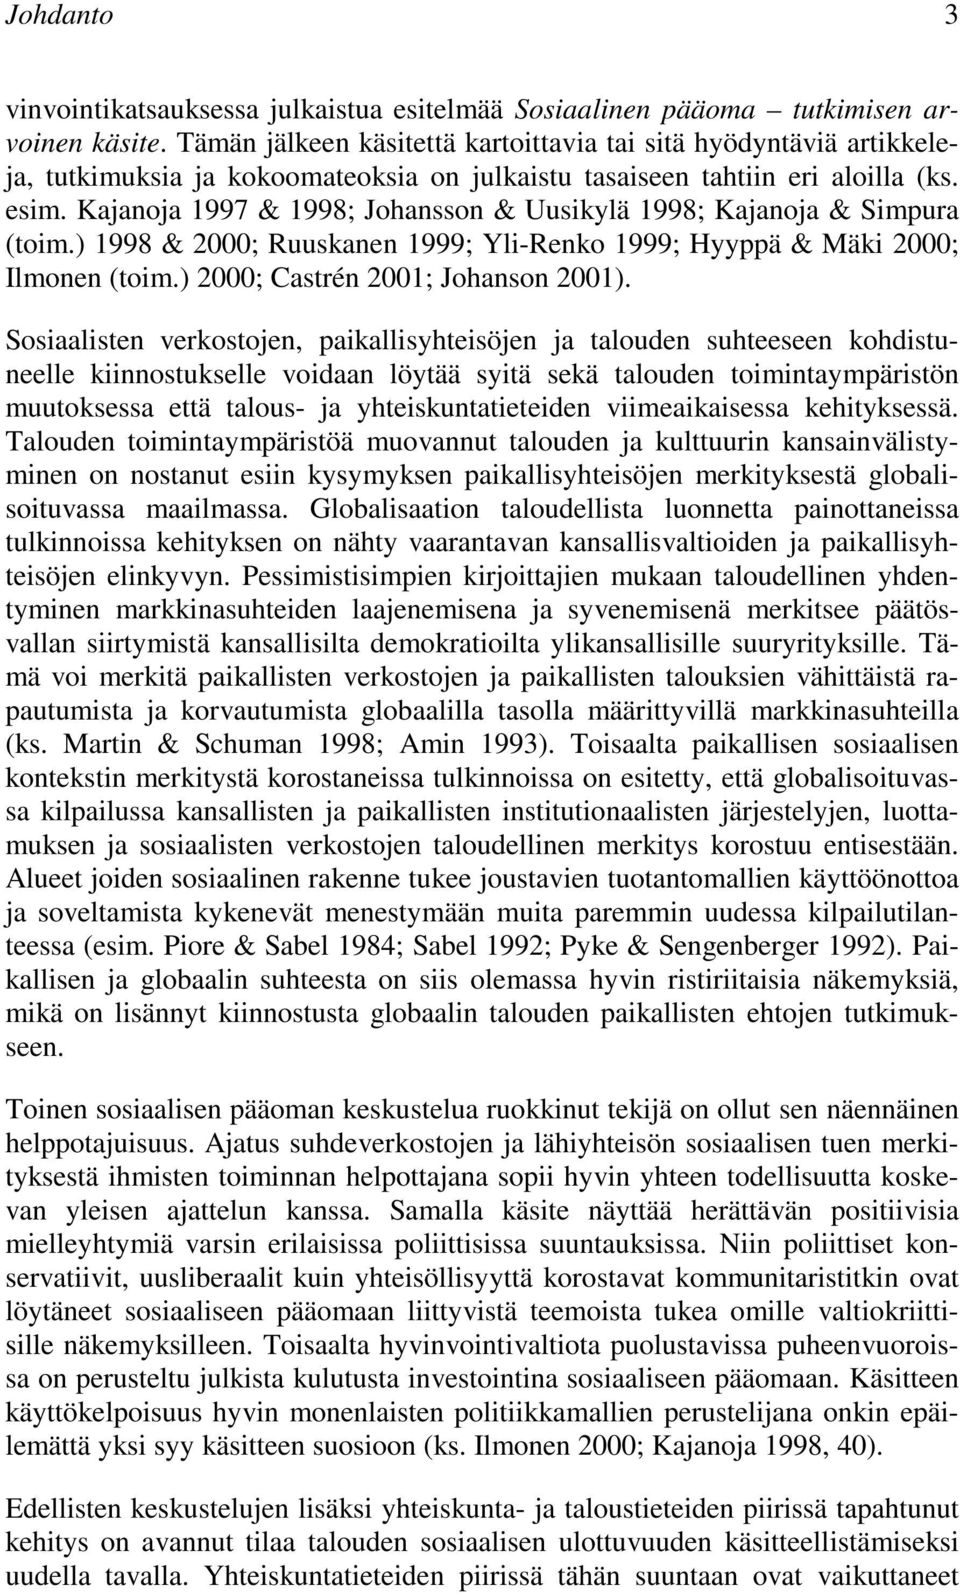 Kajanoja 1997 & 1998; Johansson & Uusikylä 1998; Kajanoja & Simpura (toim.) 1998 & 2000; Ruuskanen 1999; Yli-Renko 1999; Hyyppä & Mäki 2000; Ilmonen (toim.) 2000; Castrén 2001; Johanson 2001).